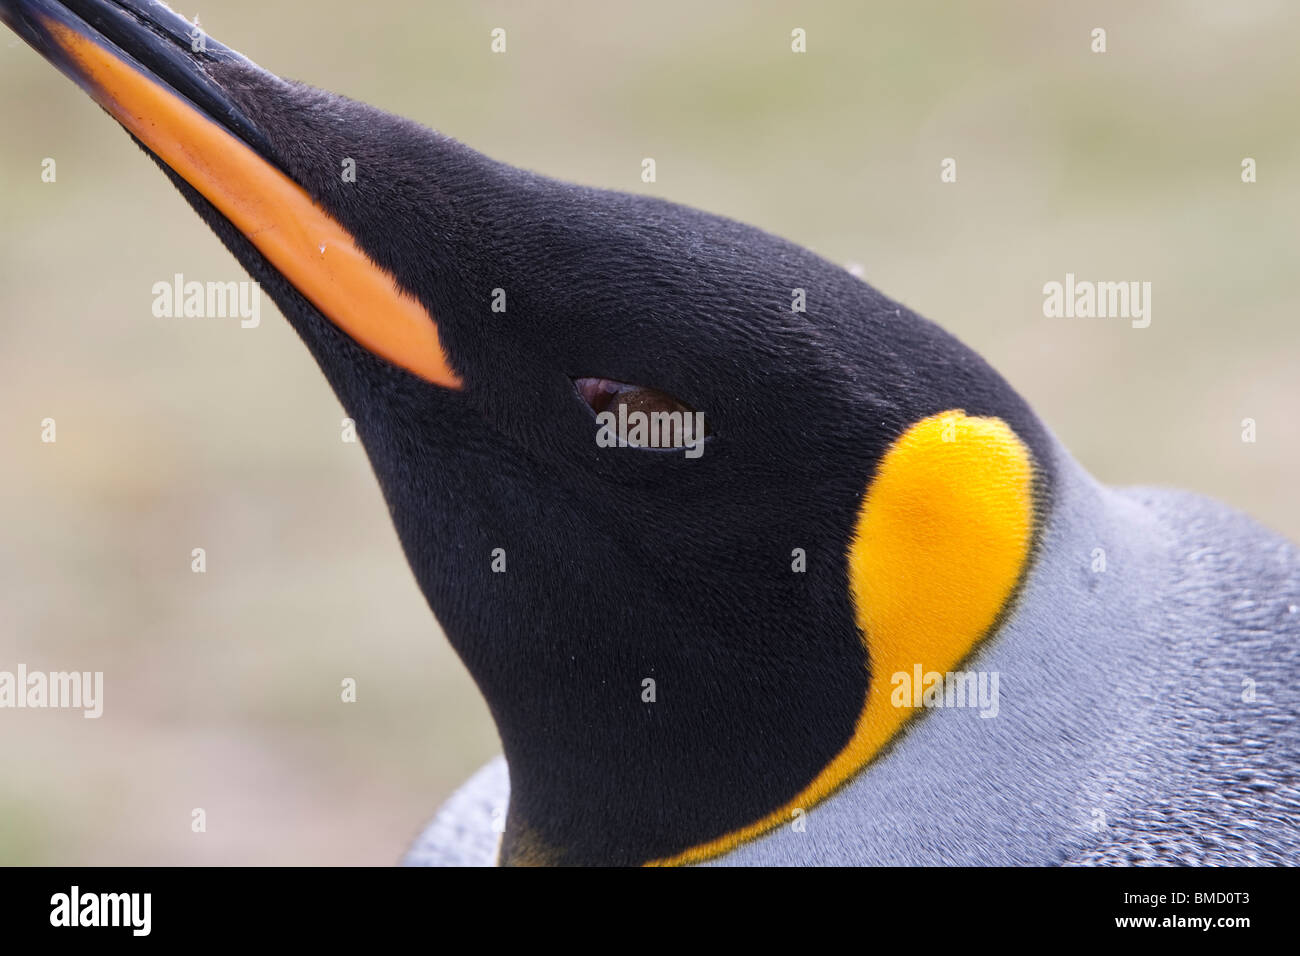 Königspinguin, pingüino rey aptenodytes patagonicus, cabeza de adulto Foto de stock